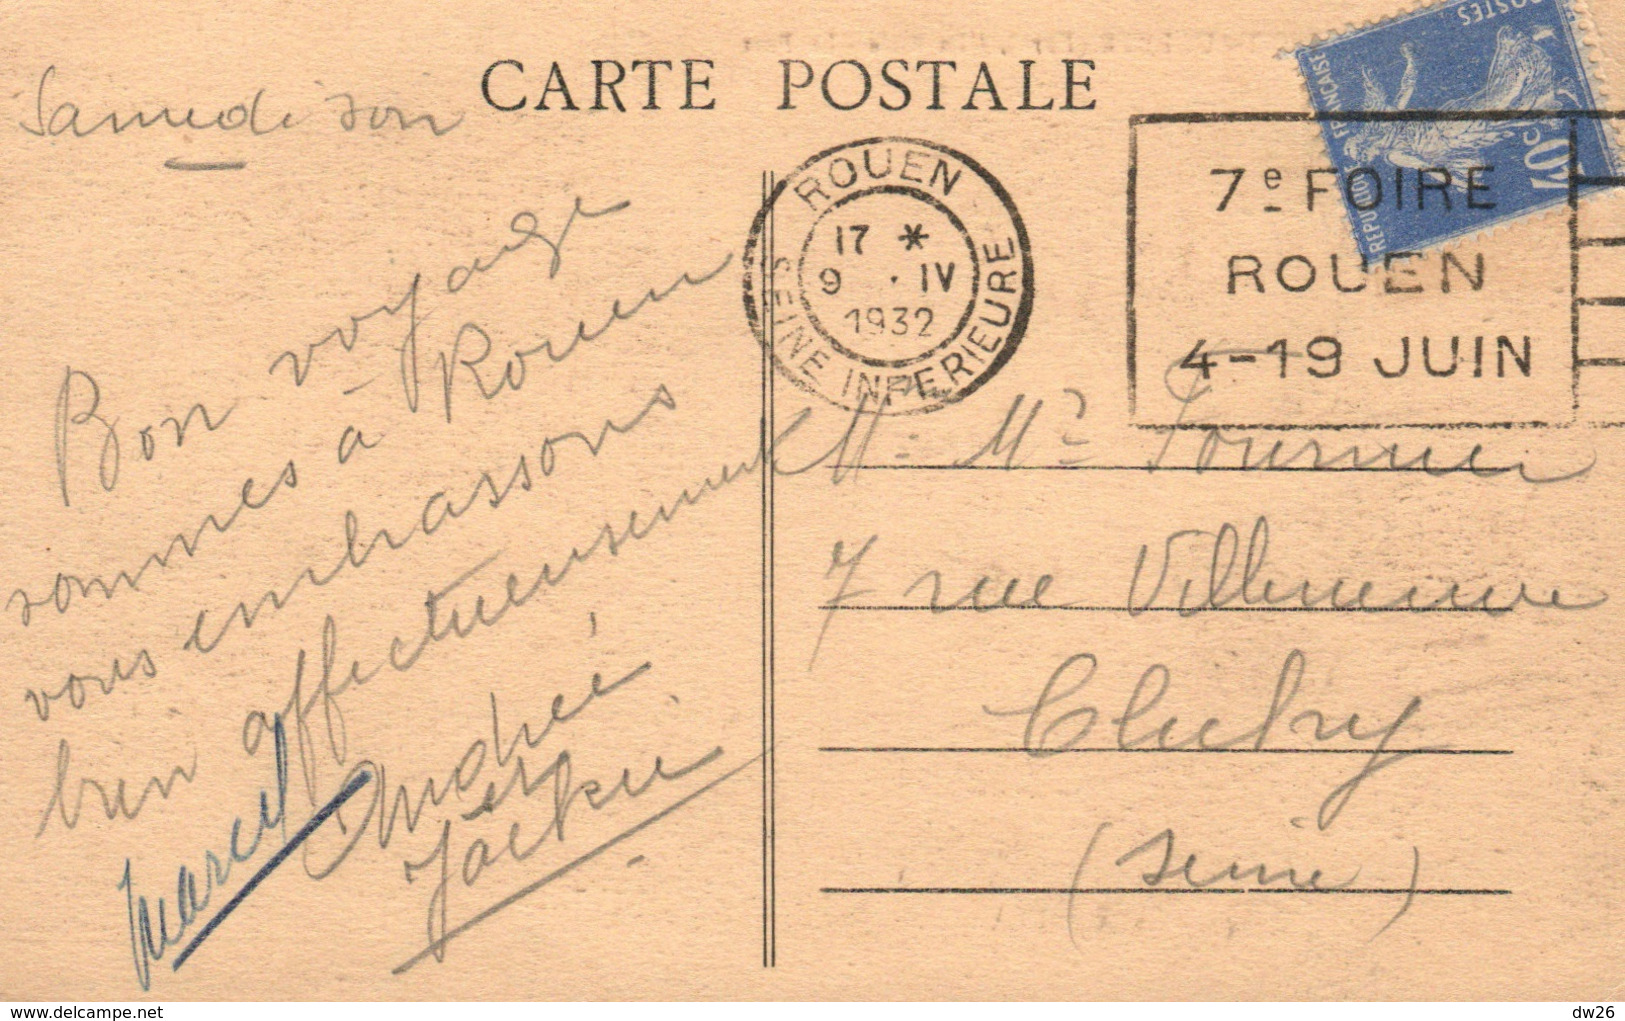 Pont-Audemer (Eure) La Risle, Le Port, Bateaux - Edition Texedre, Libraire - Carte Sépia De 1932 - Pont Audemer